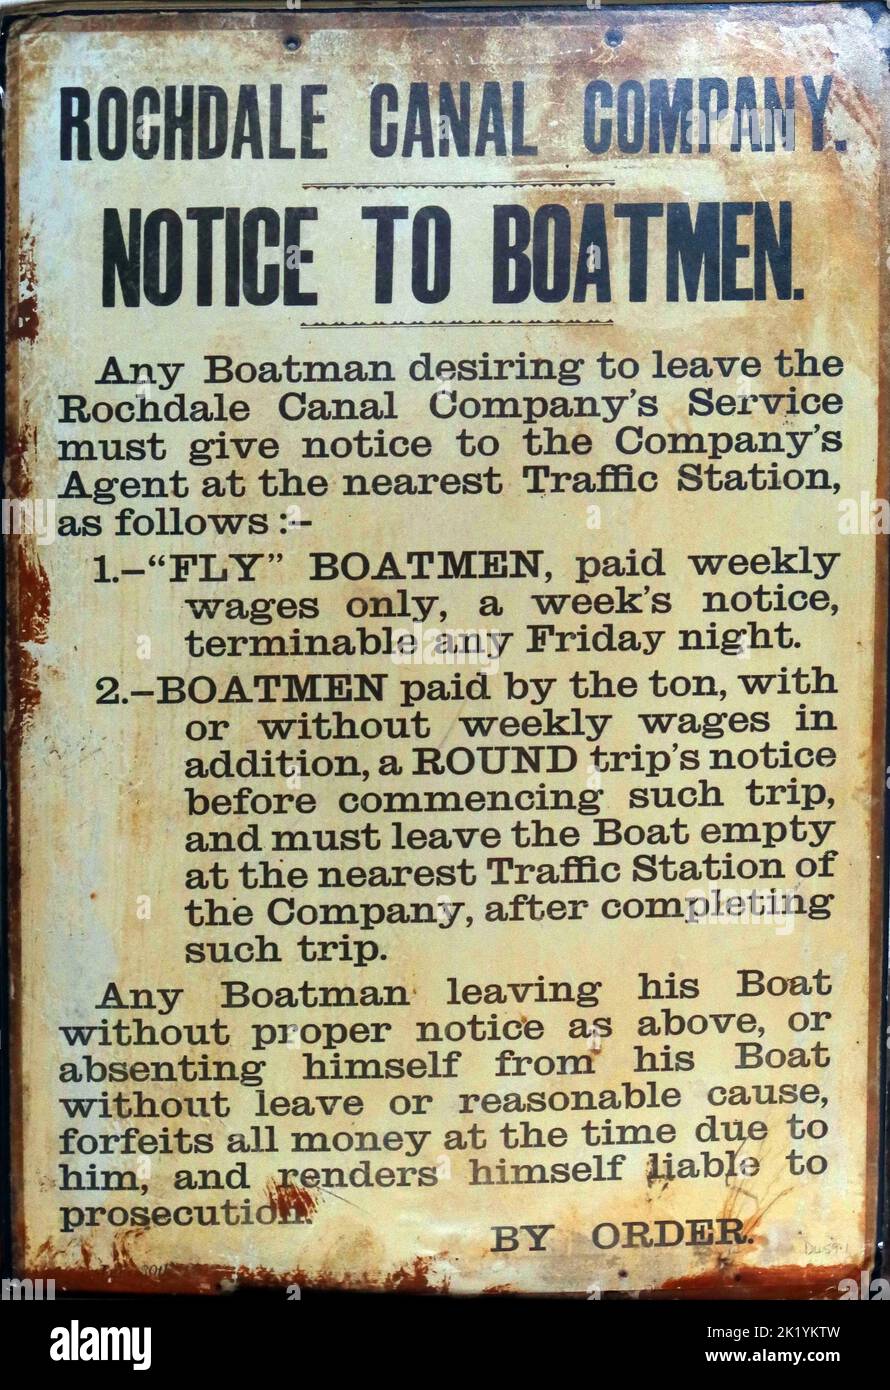 Panneau en émail métallique, Rochdale Canal Company, panneau d'avis à Boatmen, réglementation du travail, règlement d'avis par ordonnance et responsabilité en cas de poursuites Banque D'Images